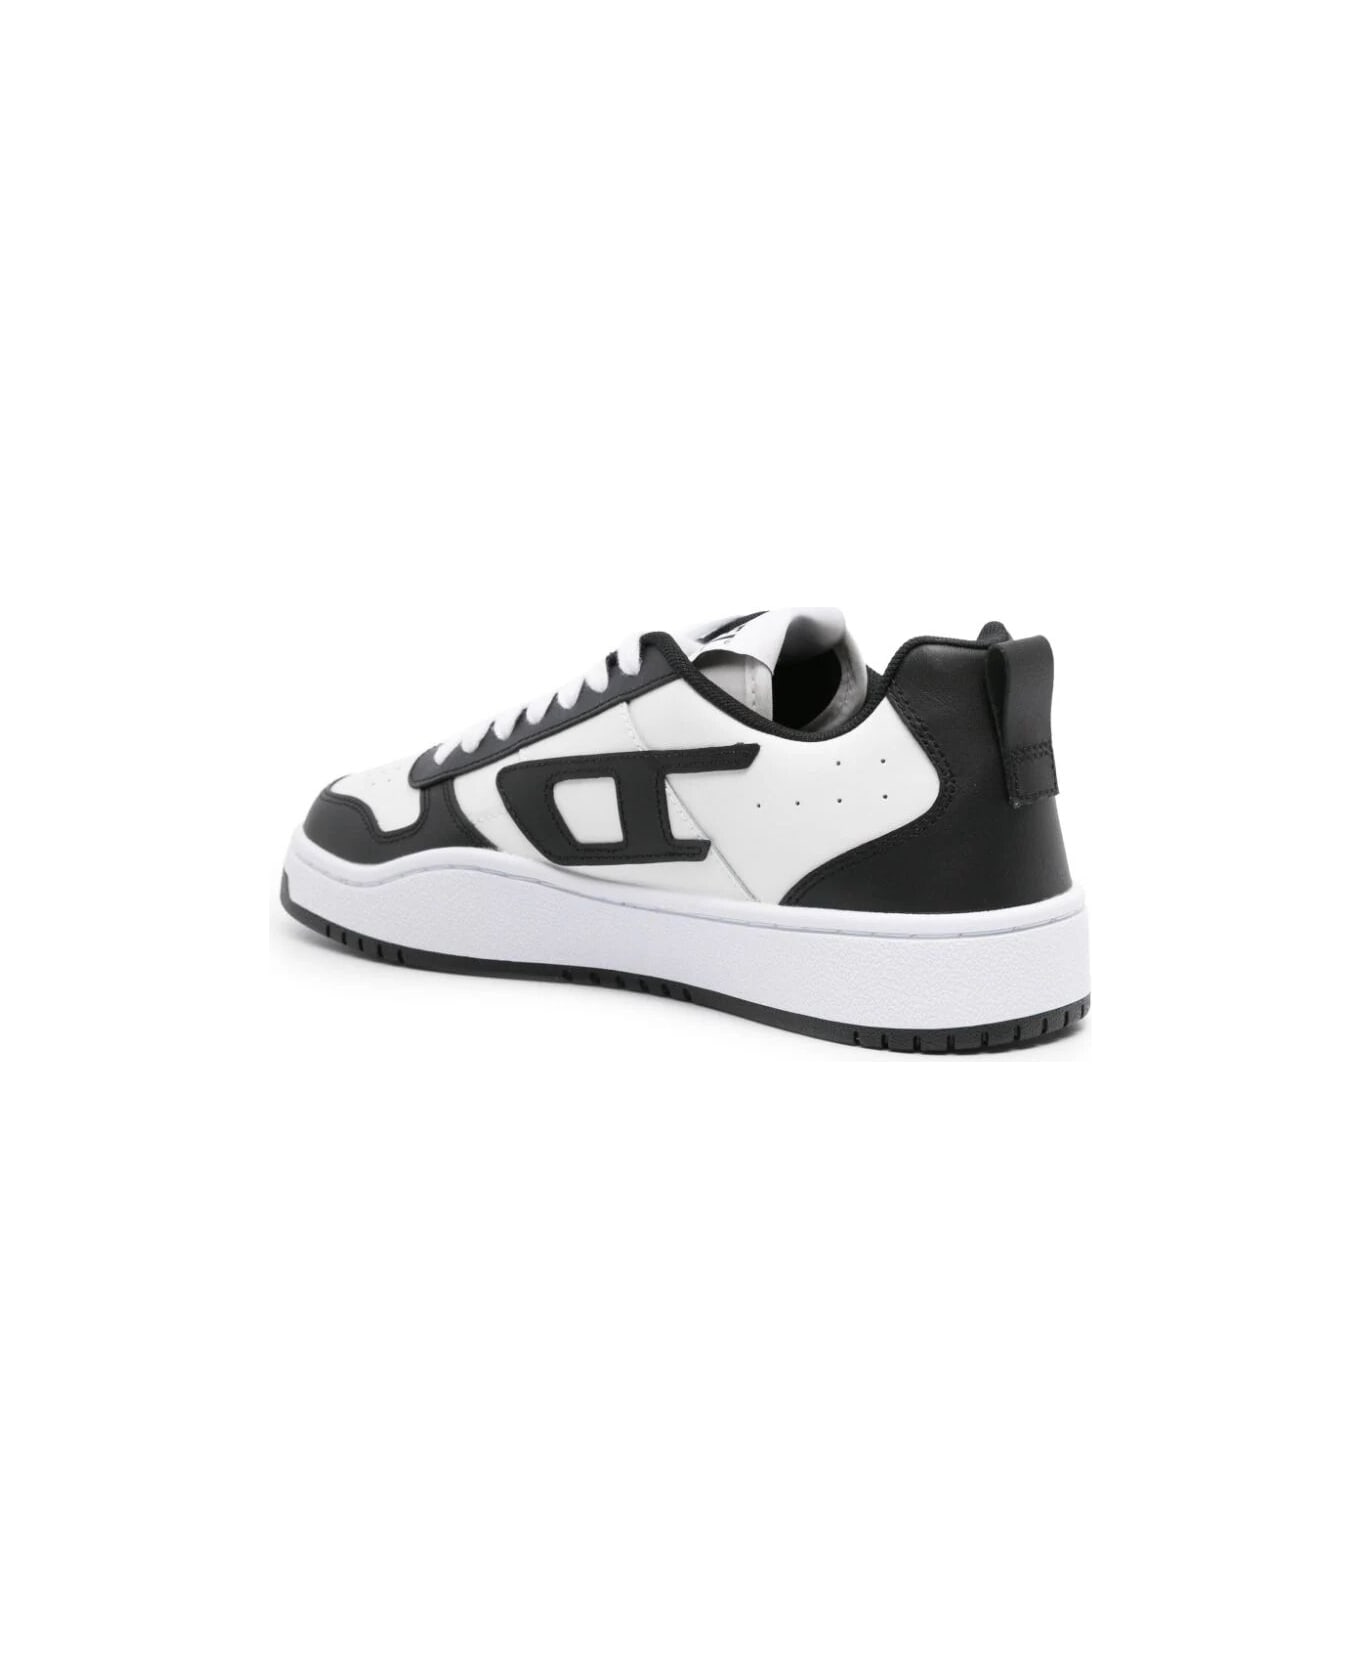 Diesel Ukiyo V2 Low Sneakers - White Black